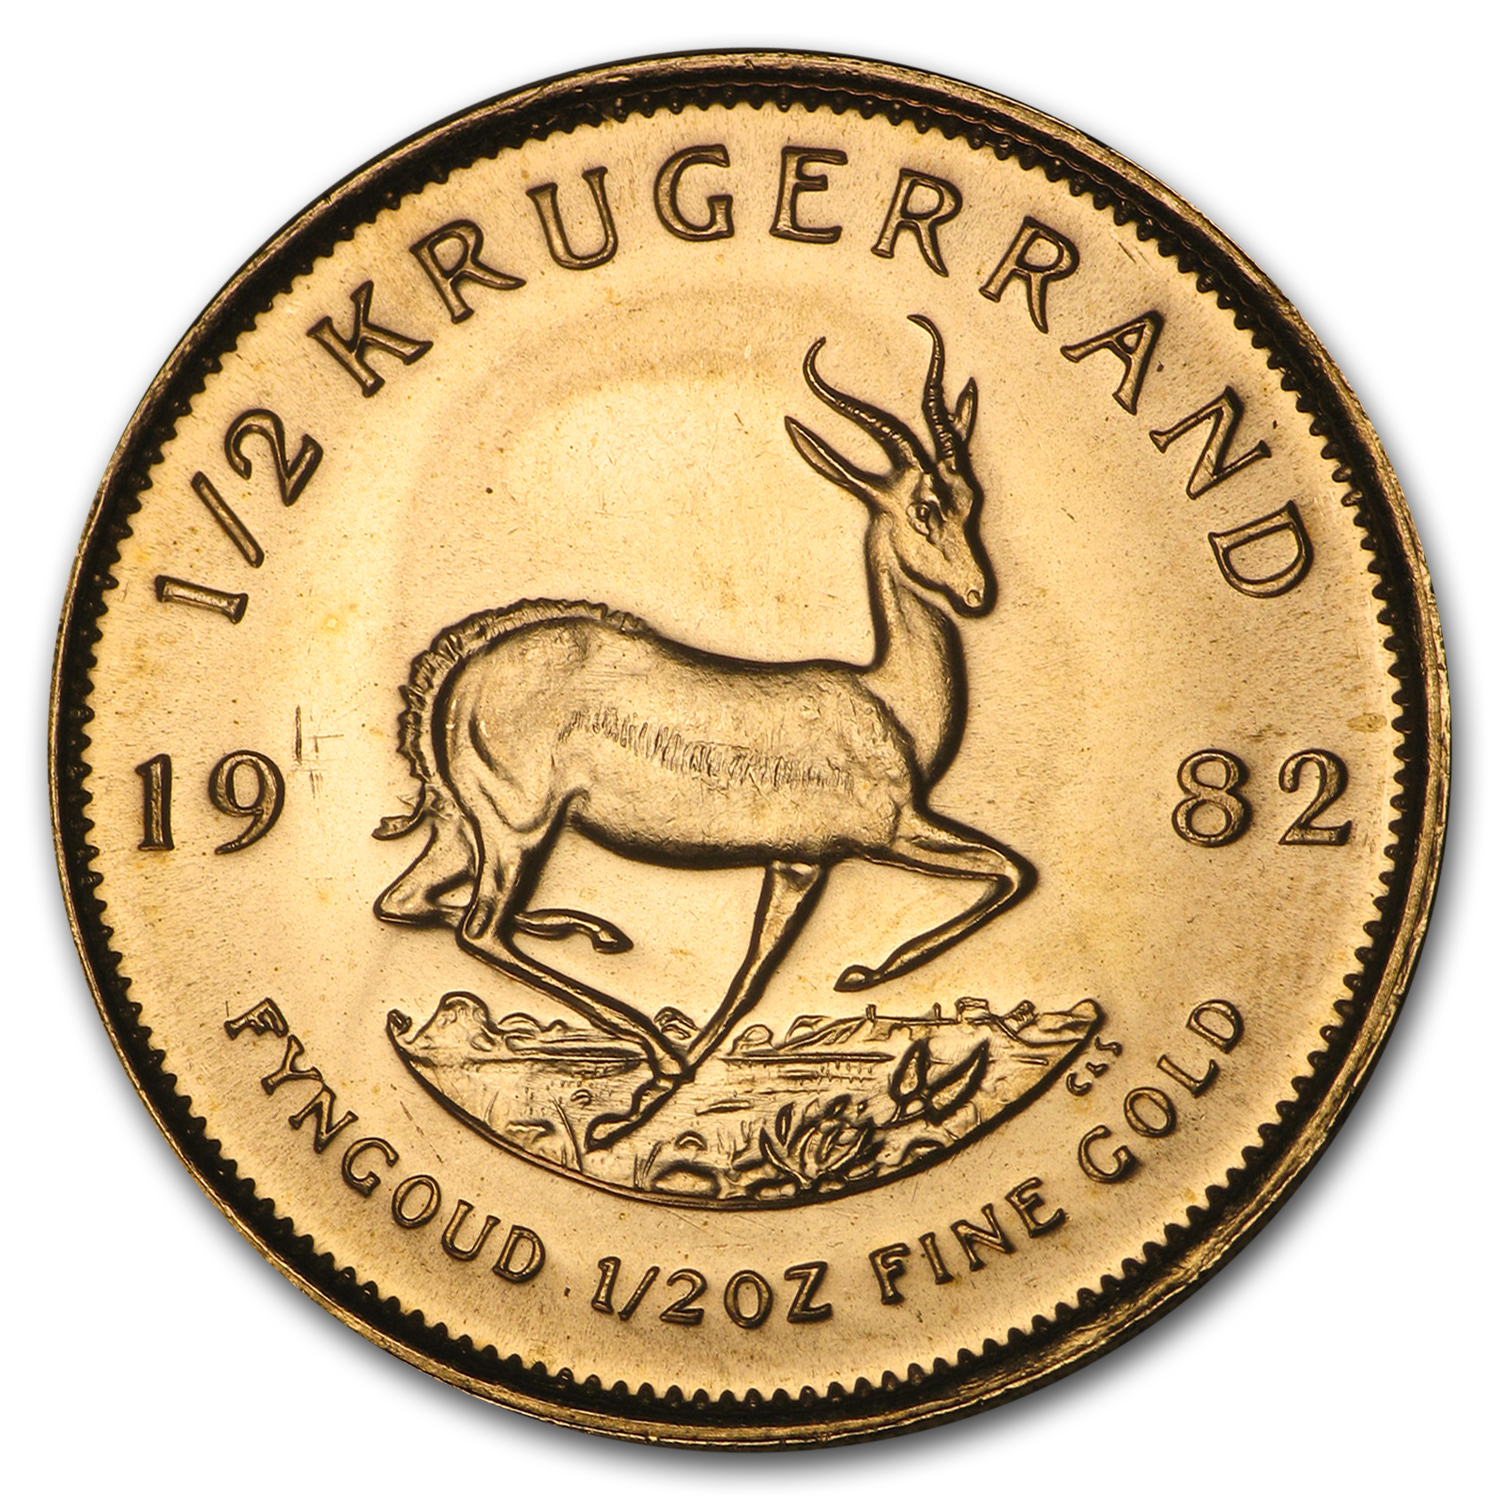 Buy 1982 South Africa 1/2 oz Gold Krugerrand